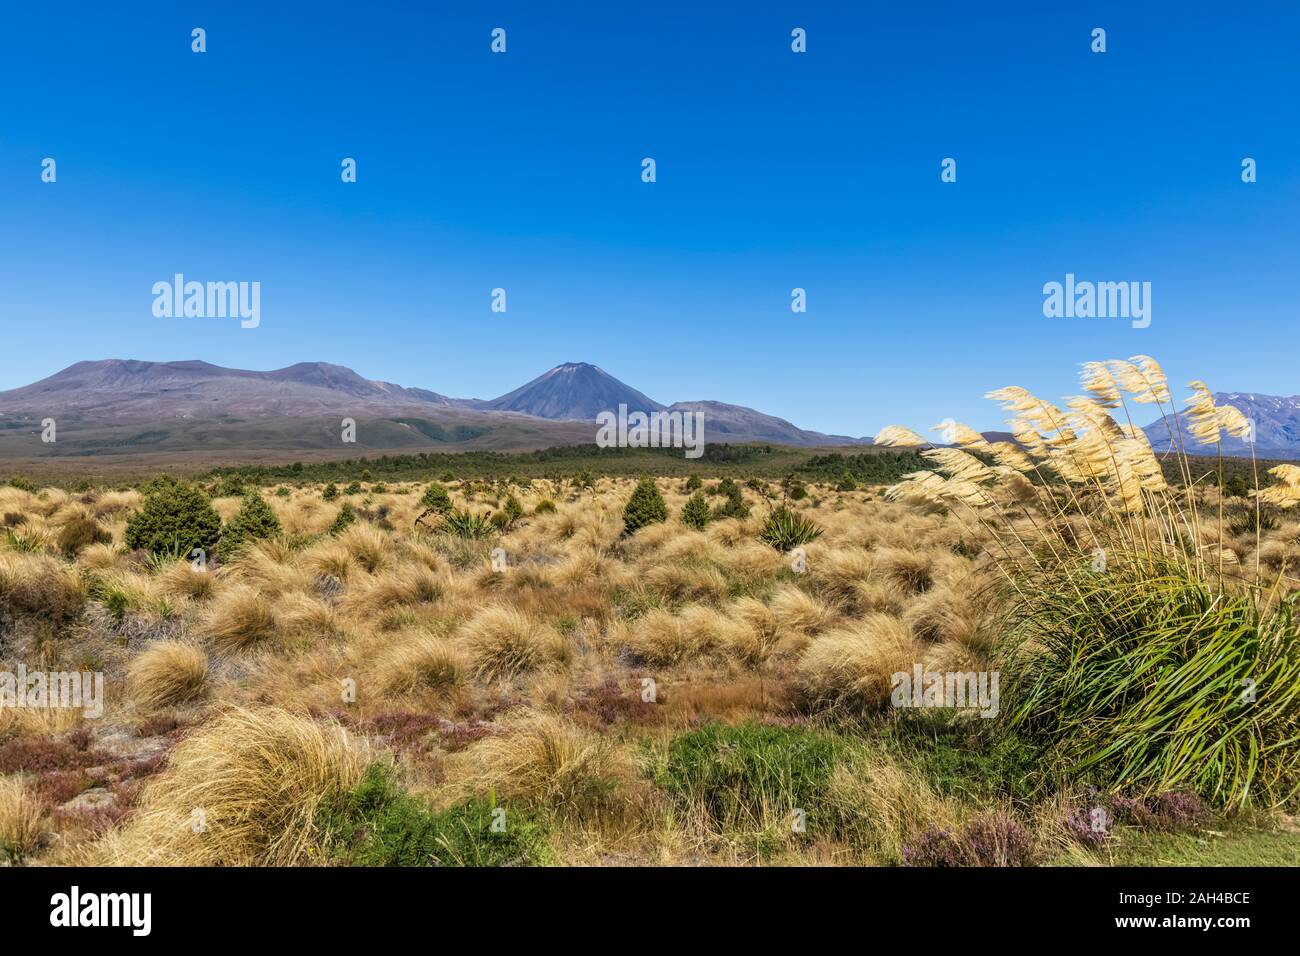 Nueva Zelanda, el norte de la isla, el azul claro del cielo sobre amarillo césped que crece en la parte delantera de los volcanes Tongariro y Ngauruhoe Foto de stock